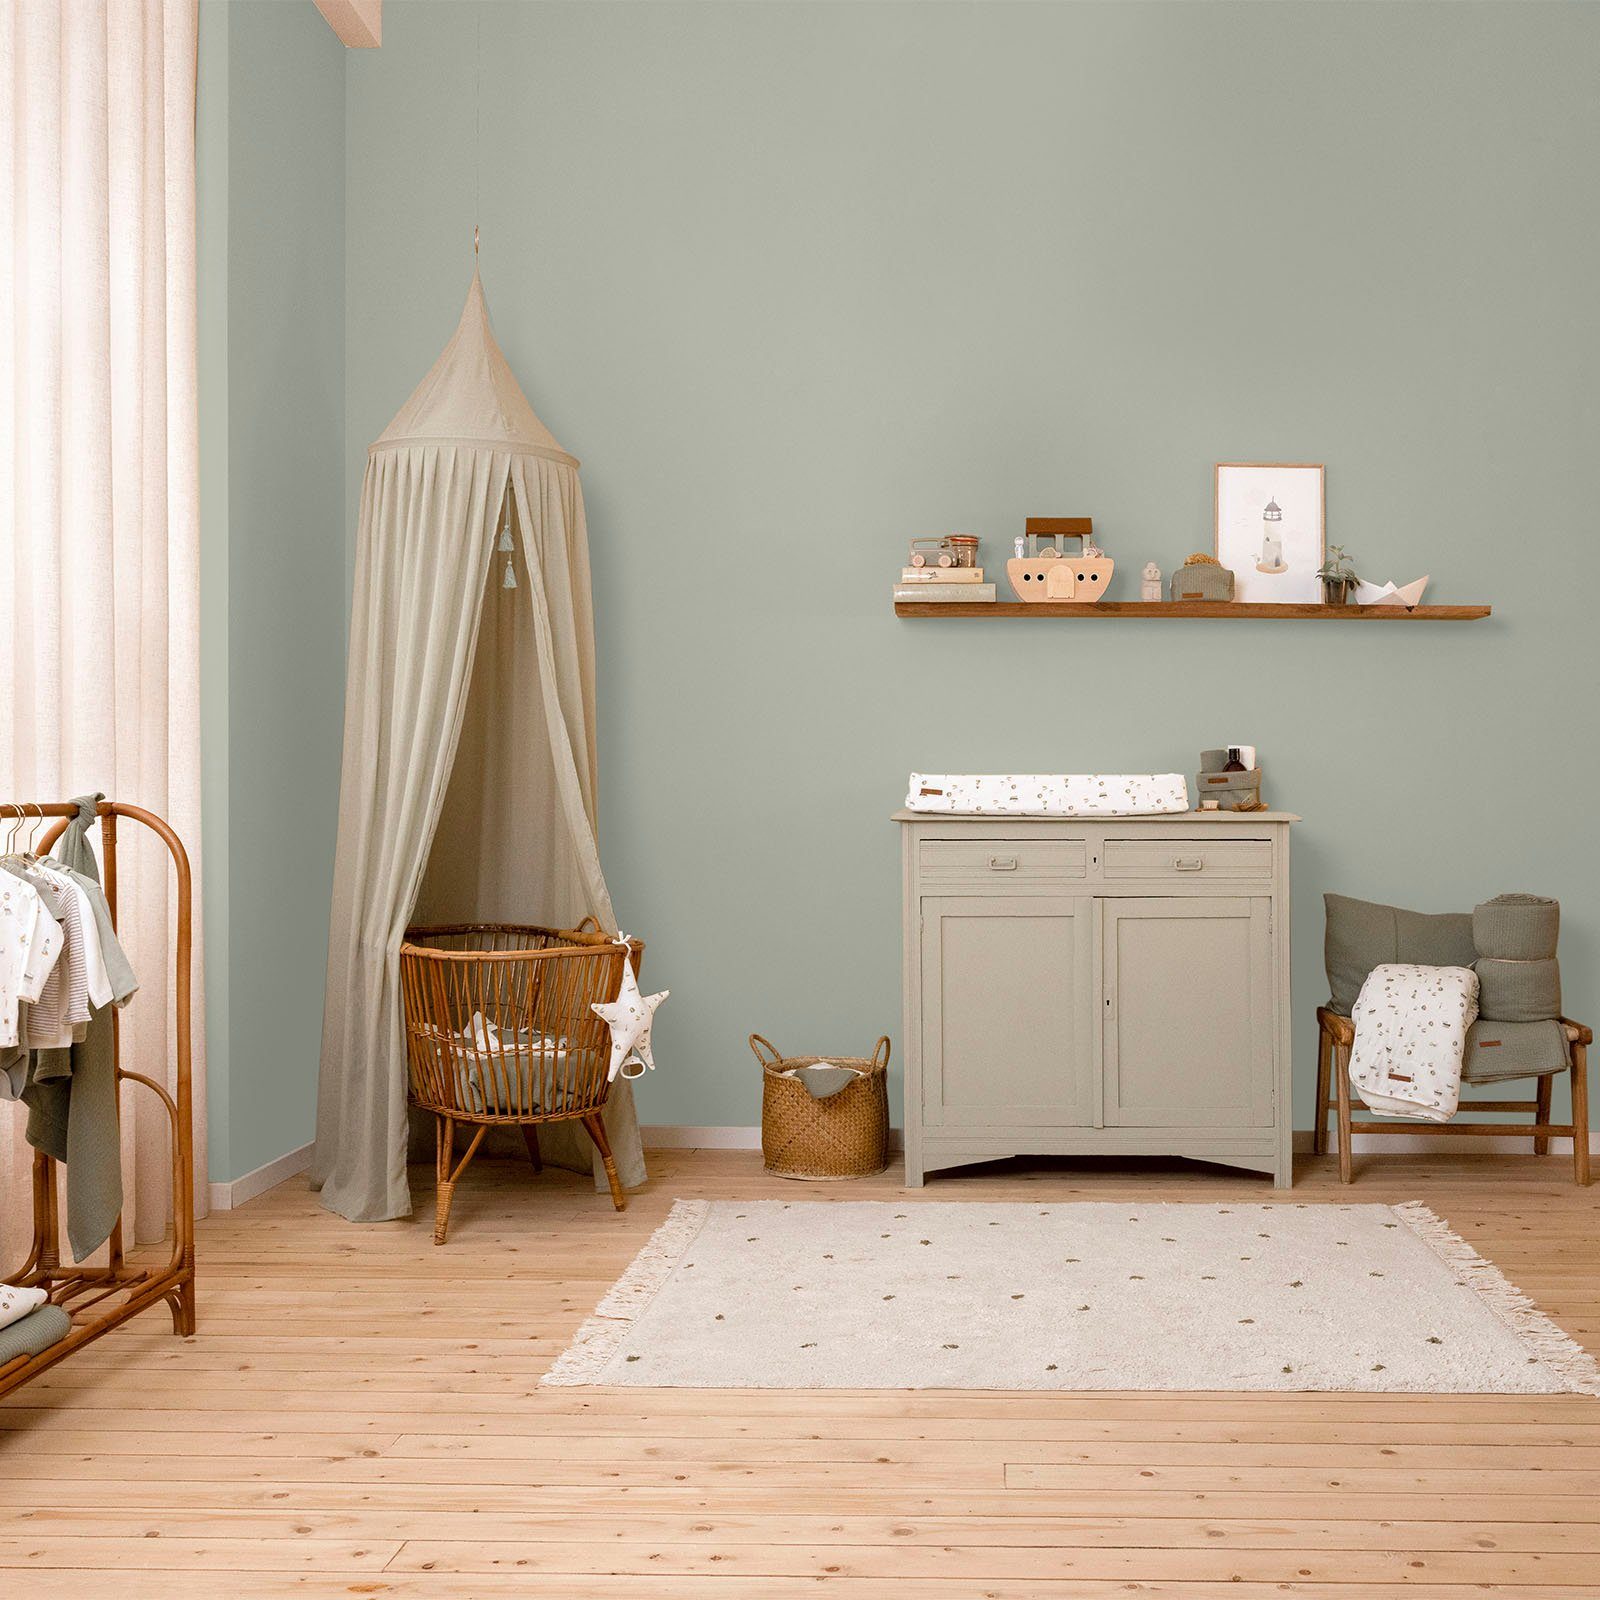 hochdeckend und für Faded Grün Wallpaint, extra Wandfarbe DUTCH waschbeständig, Olive LITTLE matt, geeignet Kinderzimmer